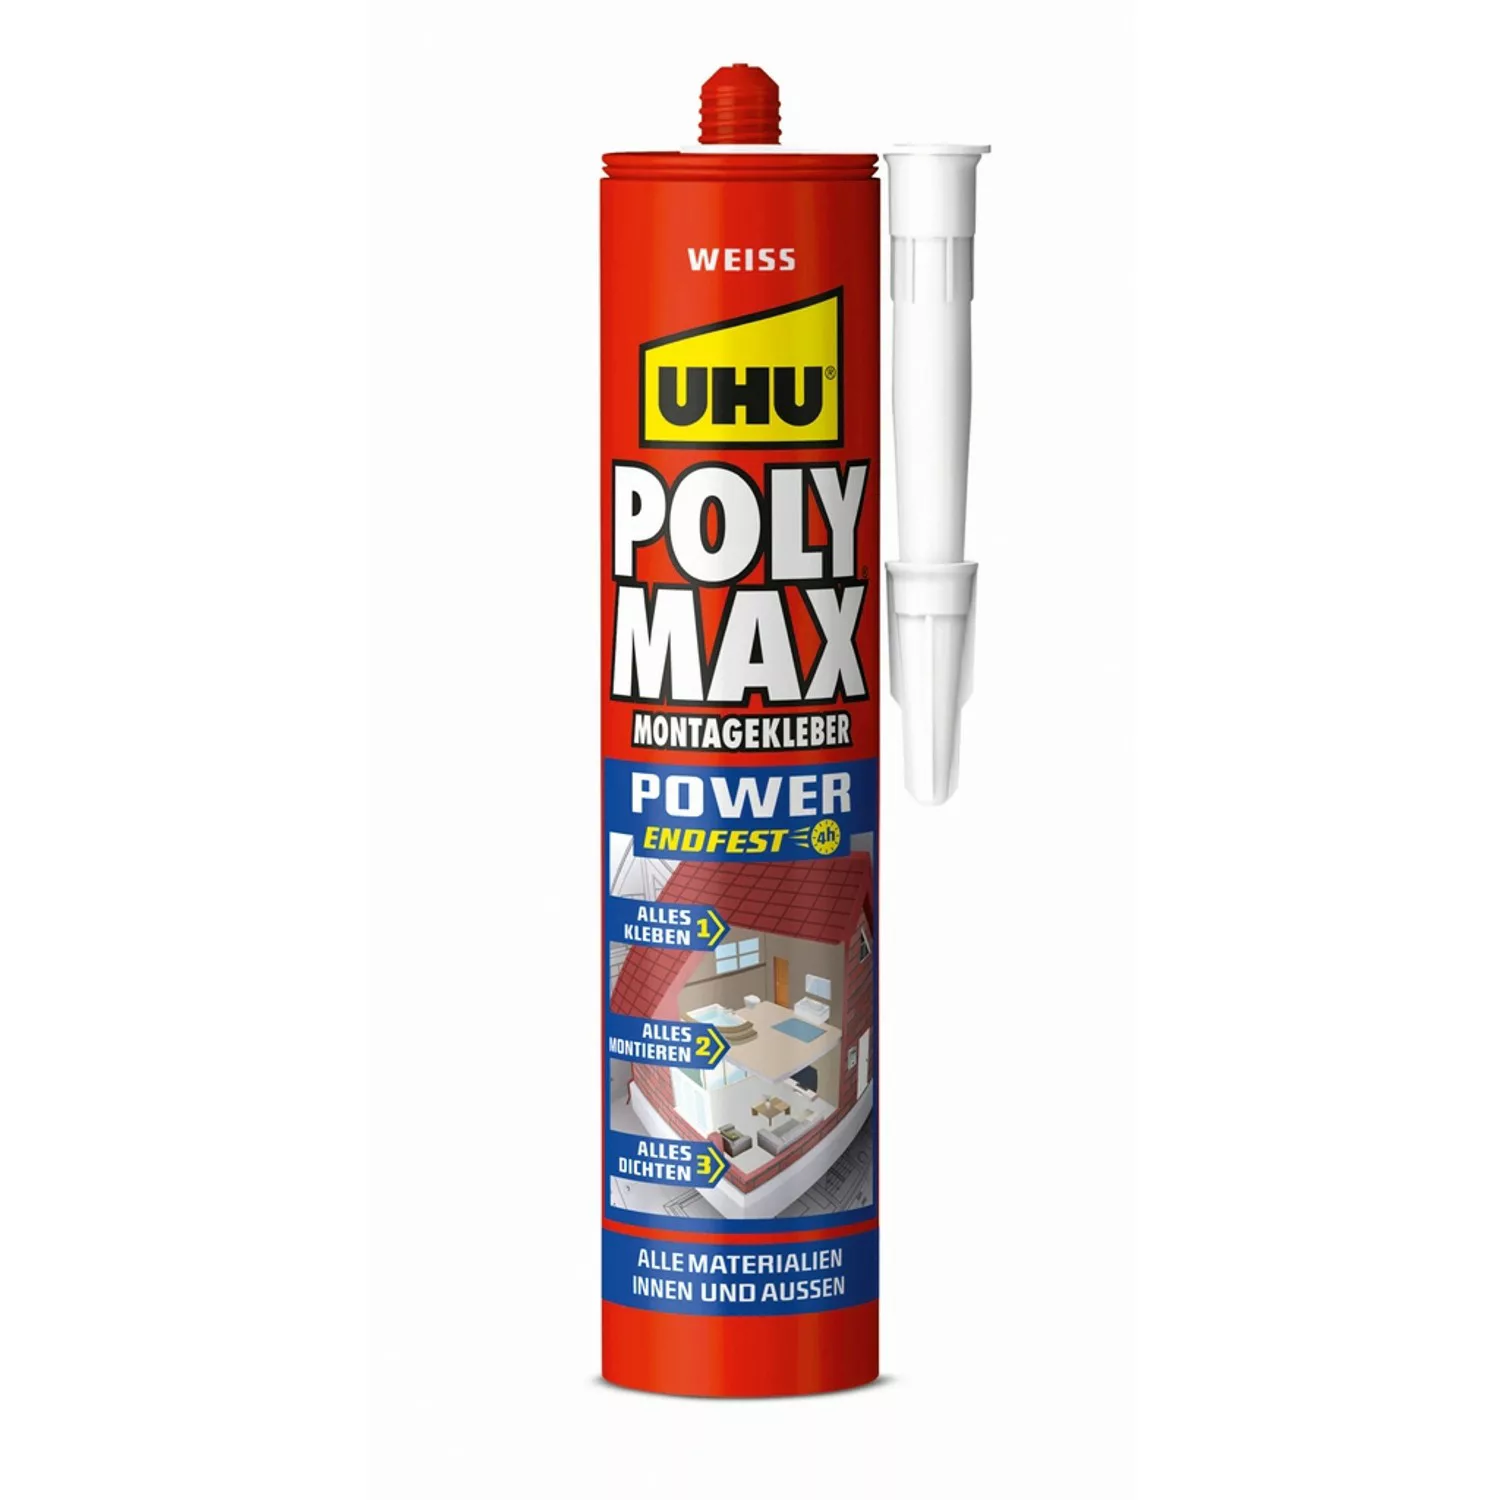 Uhu Poly Max Montagekleber Power Weiß 425 g günstig online kaufen